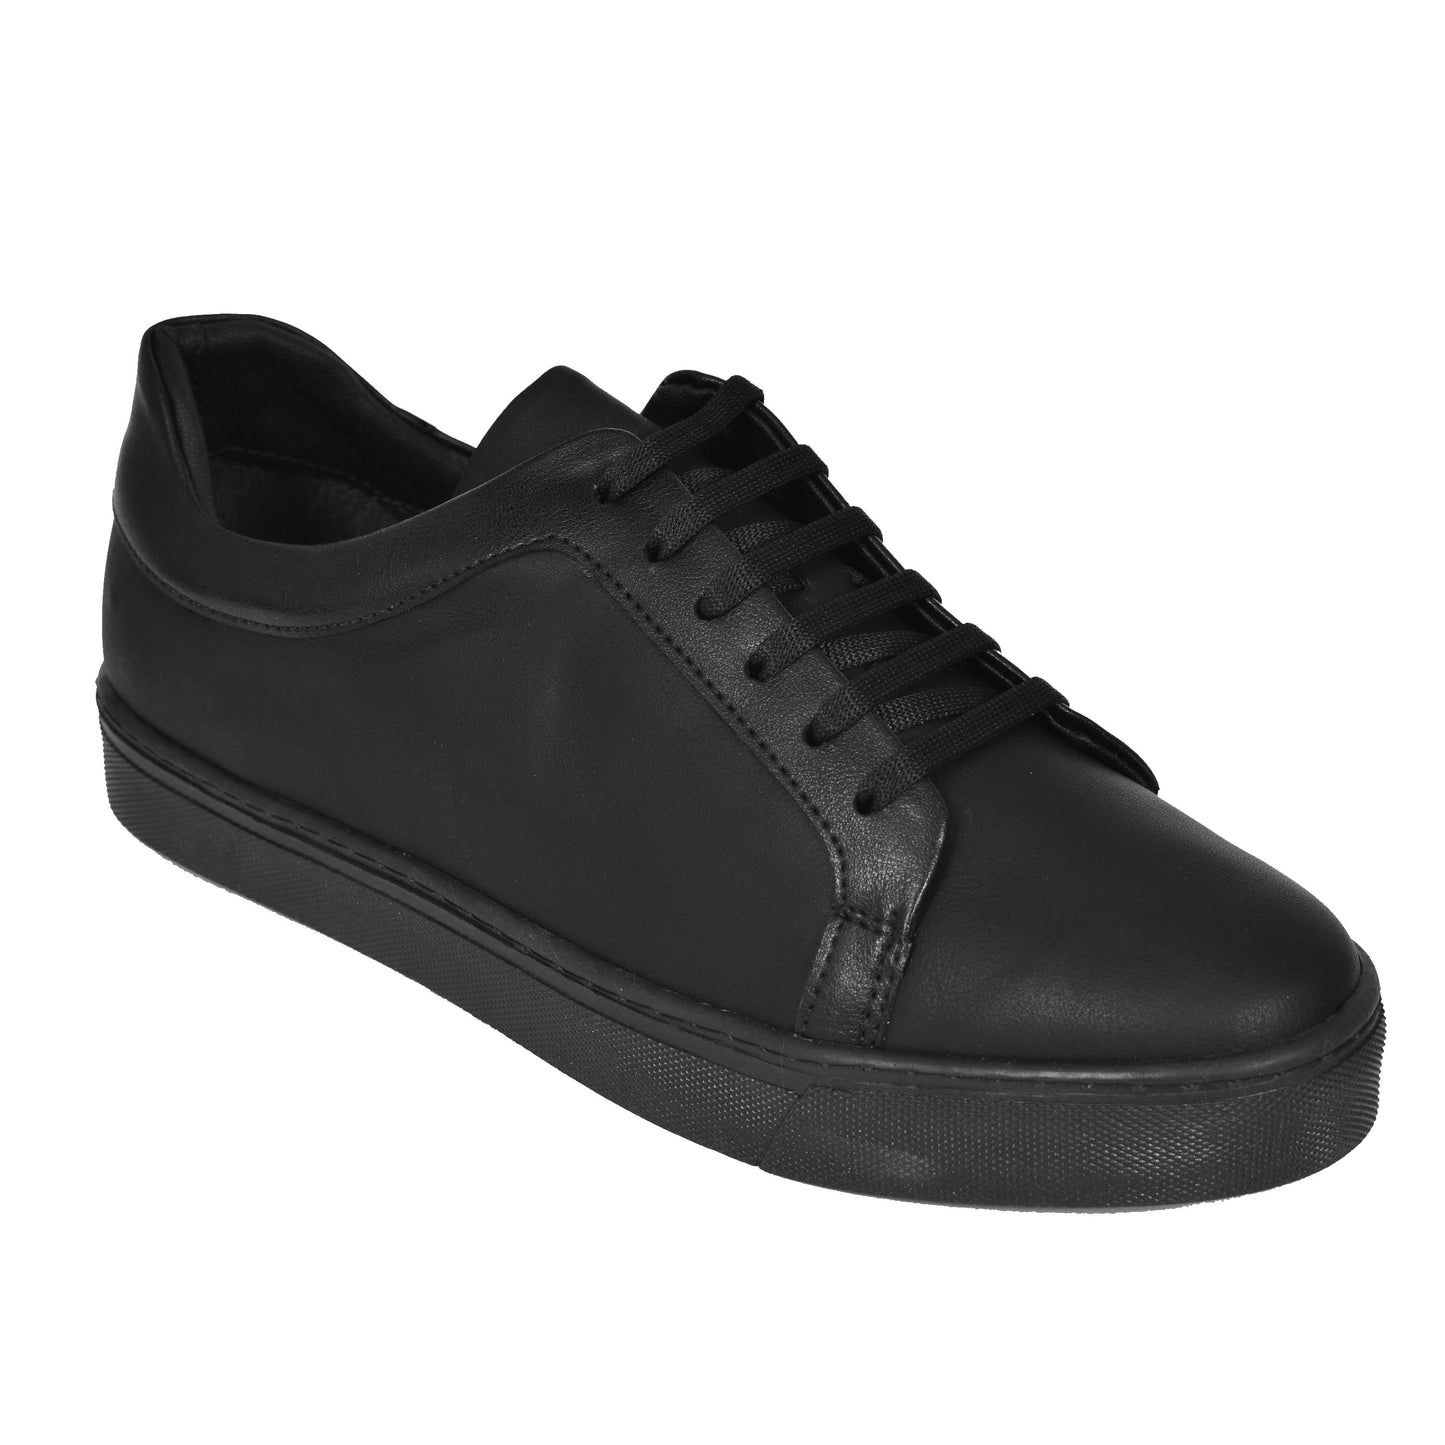 SALE! 2H #9500 Black Casual Shoes